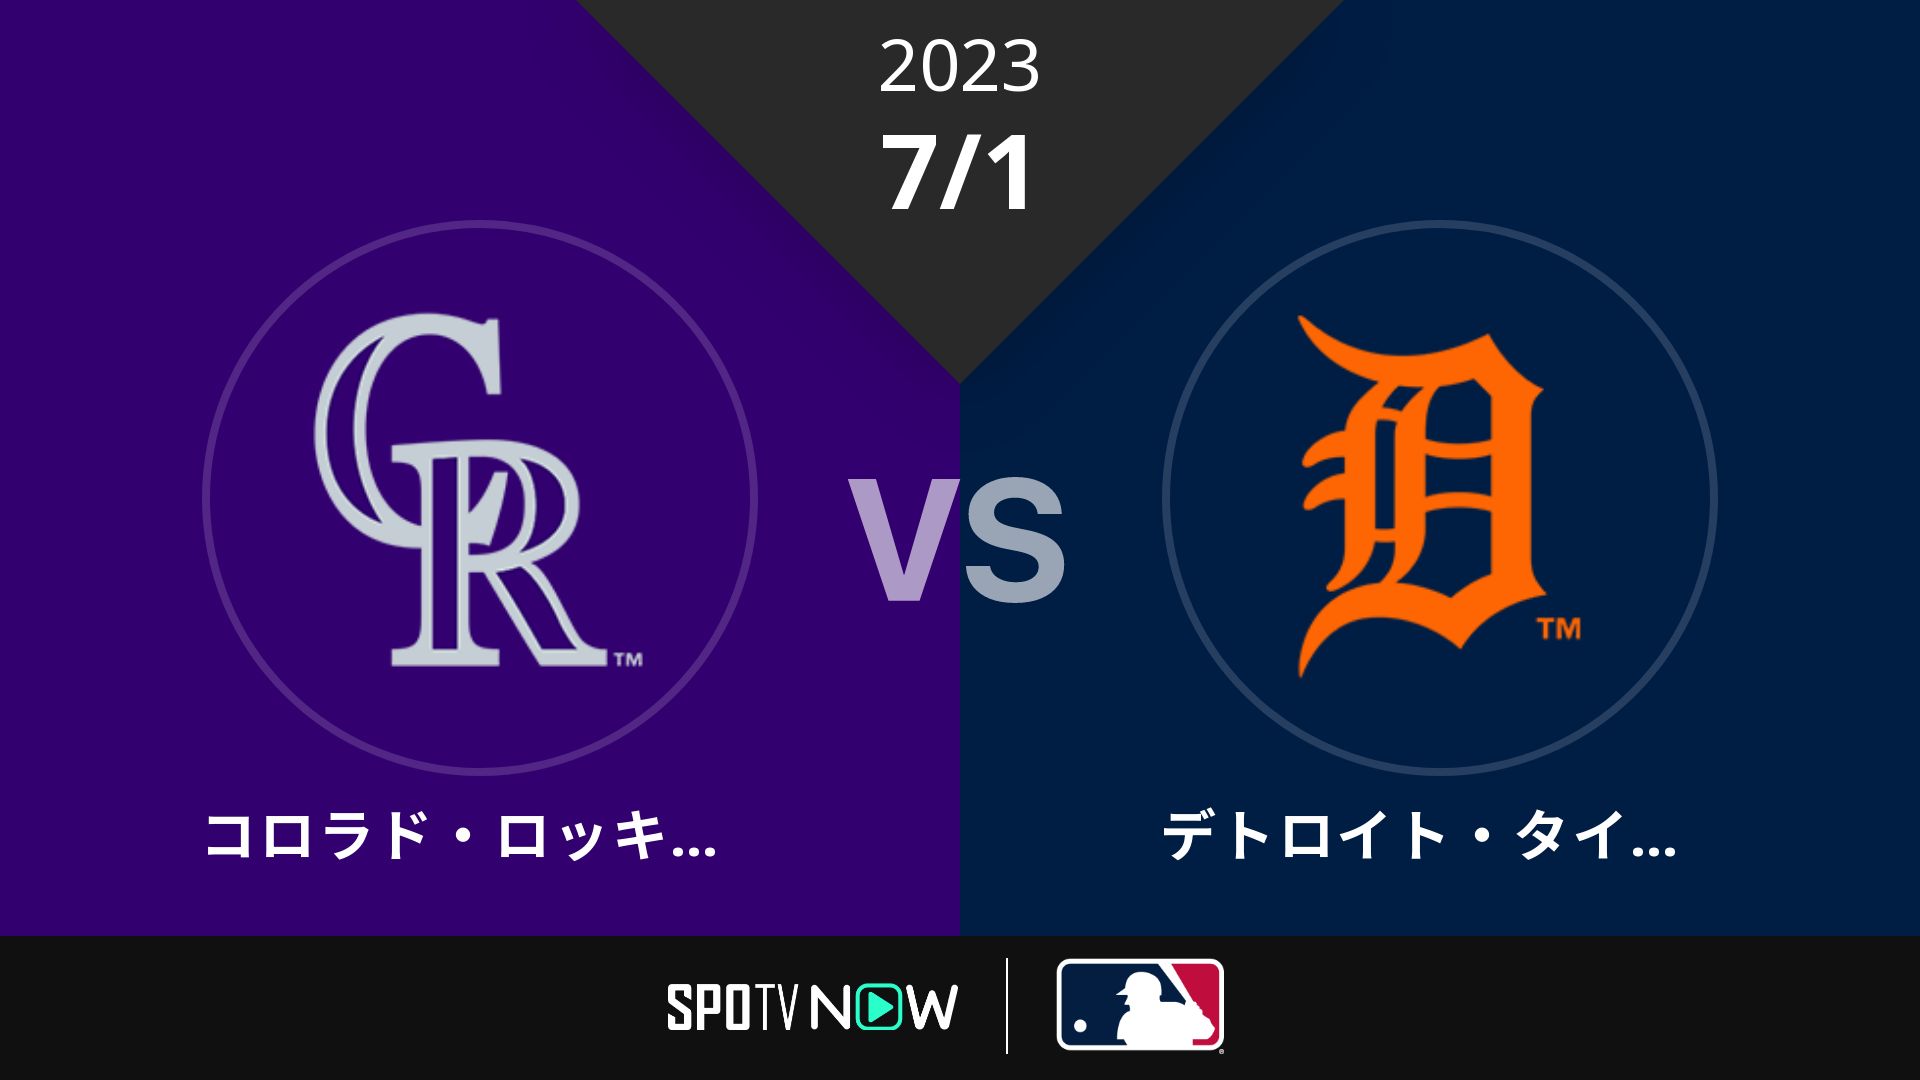 2023/7/1 ロッキーズ vs タイガース [MLB]